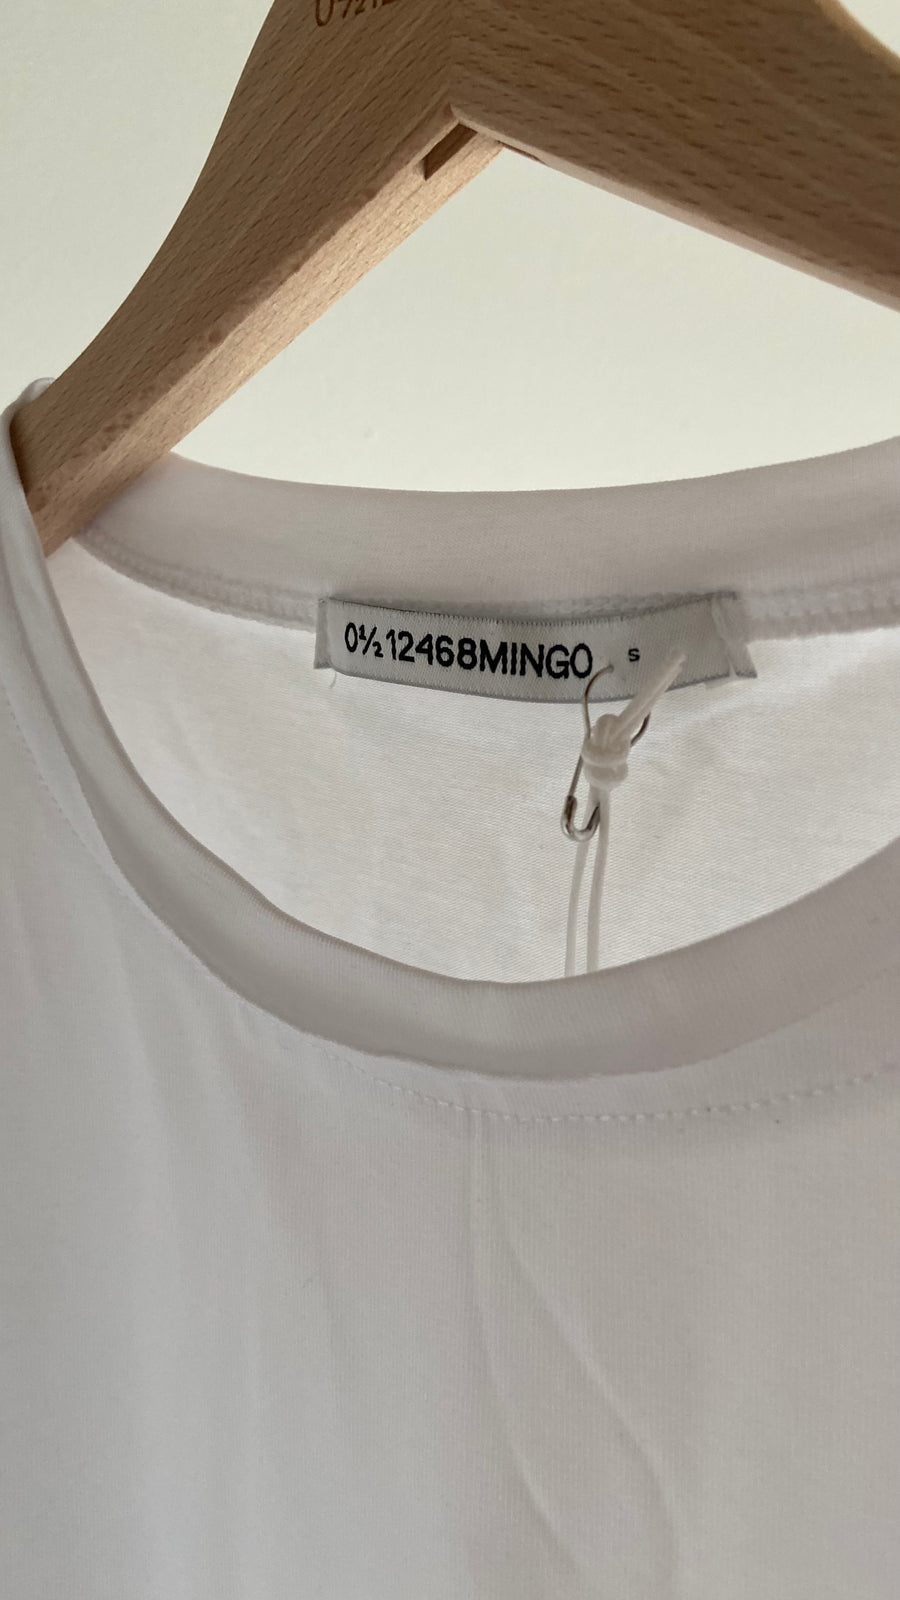 Mingo Basic Adult Longsleeve T-shirt White (Japan Limited)